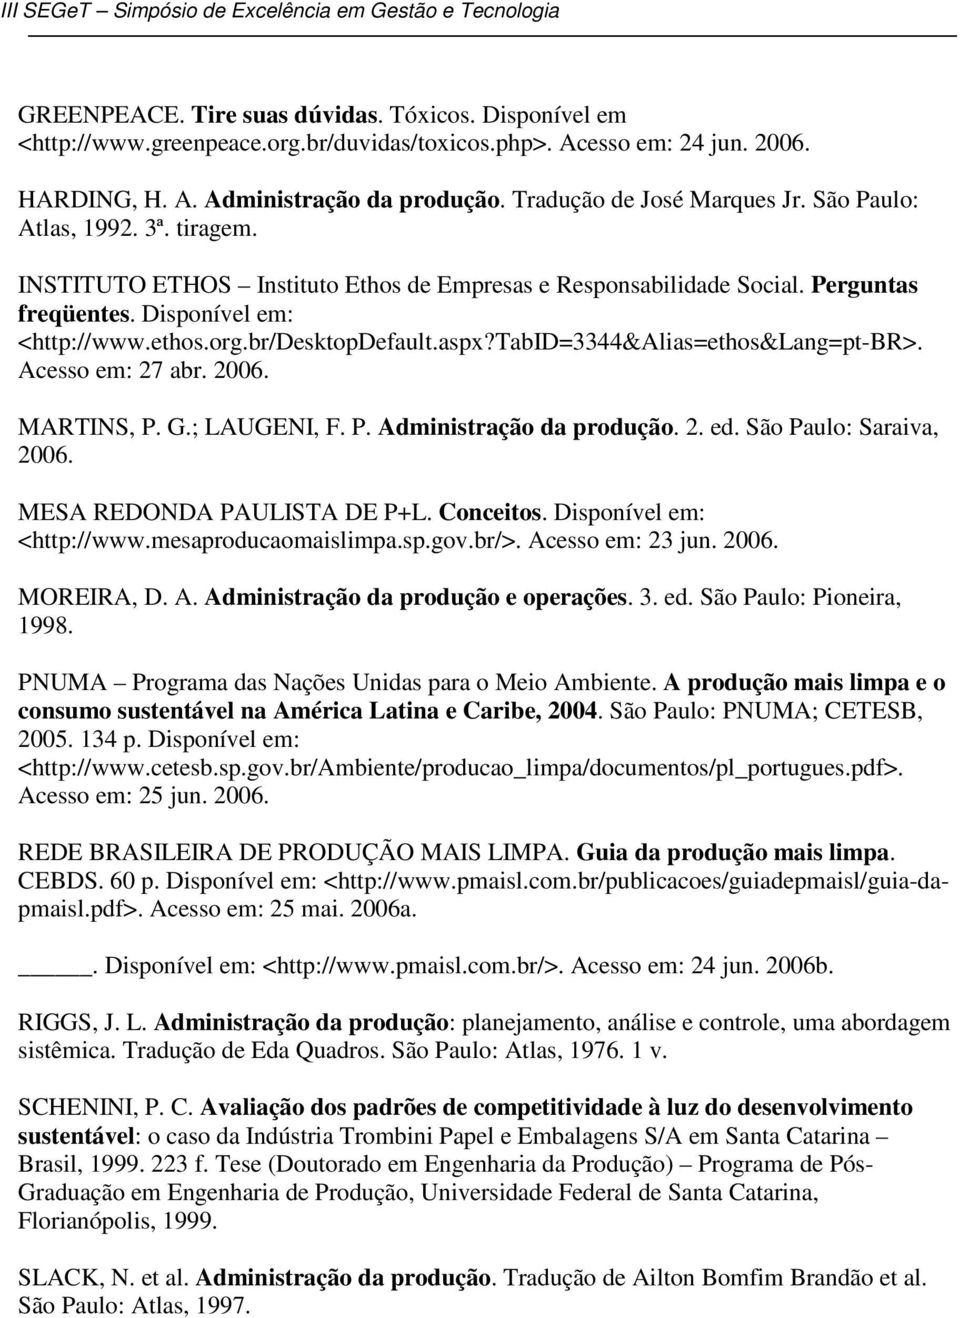 br/desktopdefault.aspx?tabid=3344&alias=ethos&lang=pt-br>. Acesso em: 27 abr. 2006. MARTINS, P. G.; LAUGENI, F. P. Administração da produção. 2. ed. São Paulo: Saraiva, 2006.